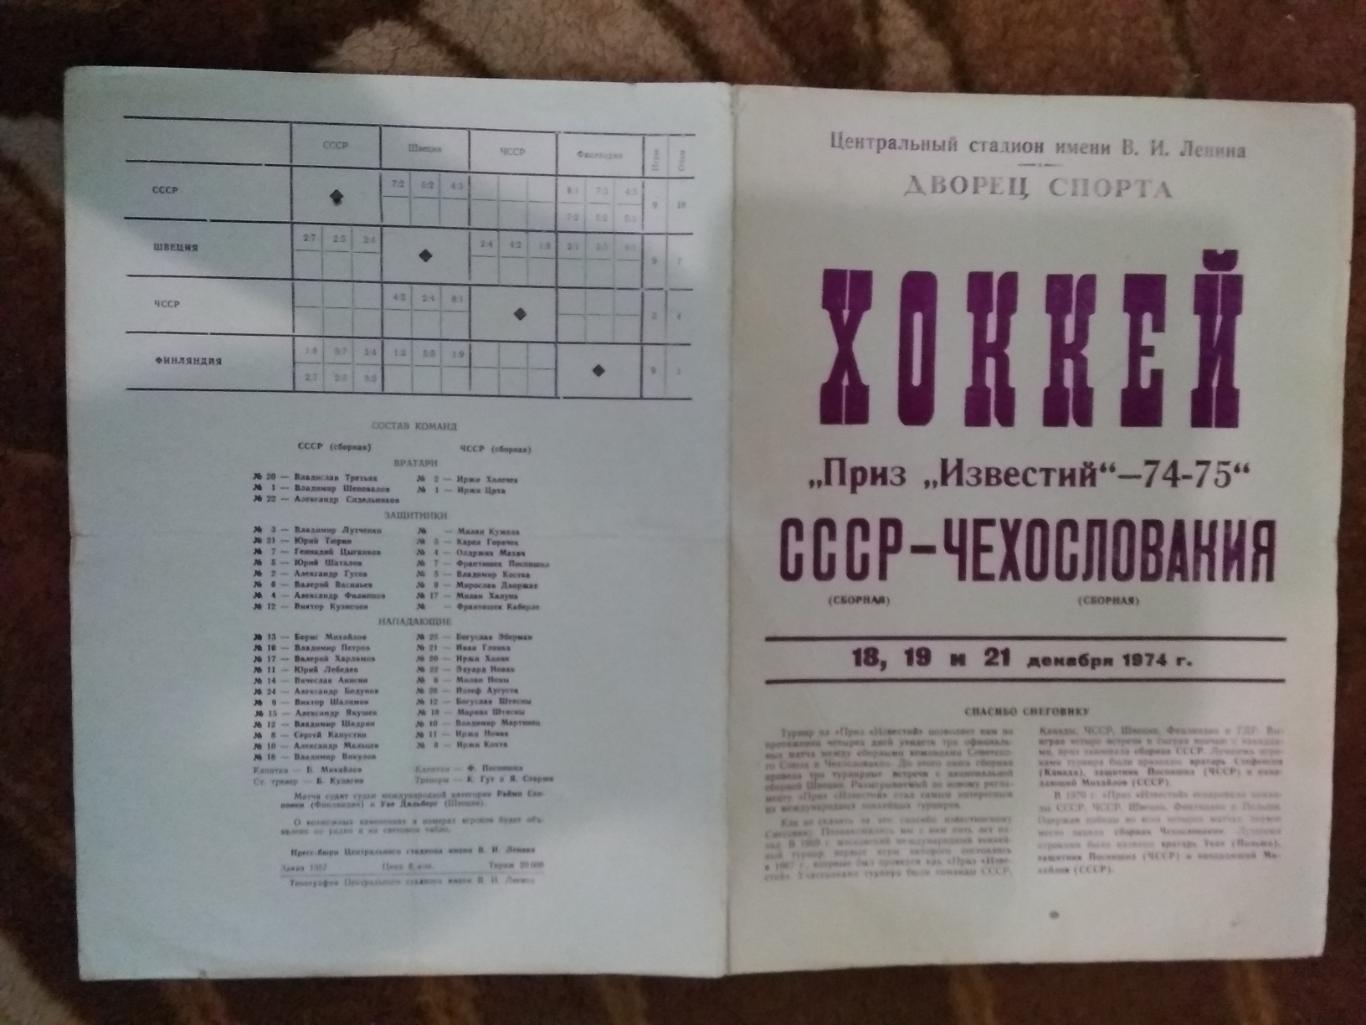 Приз Известий 1974-1975. СССР - Чехословакия 18-21.12.1974 г.